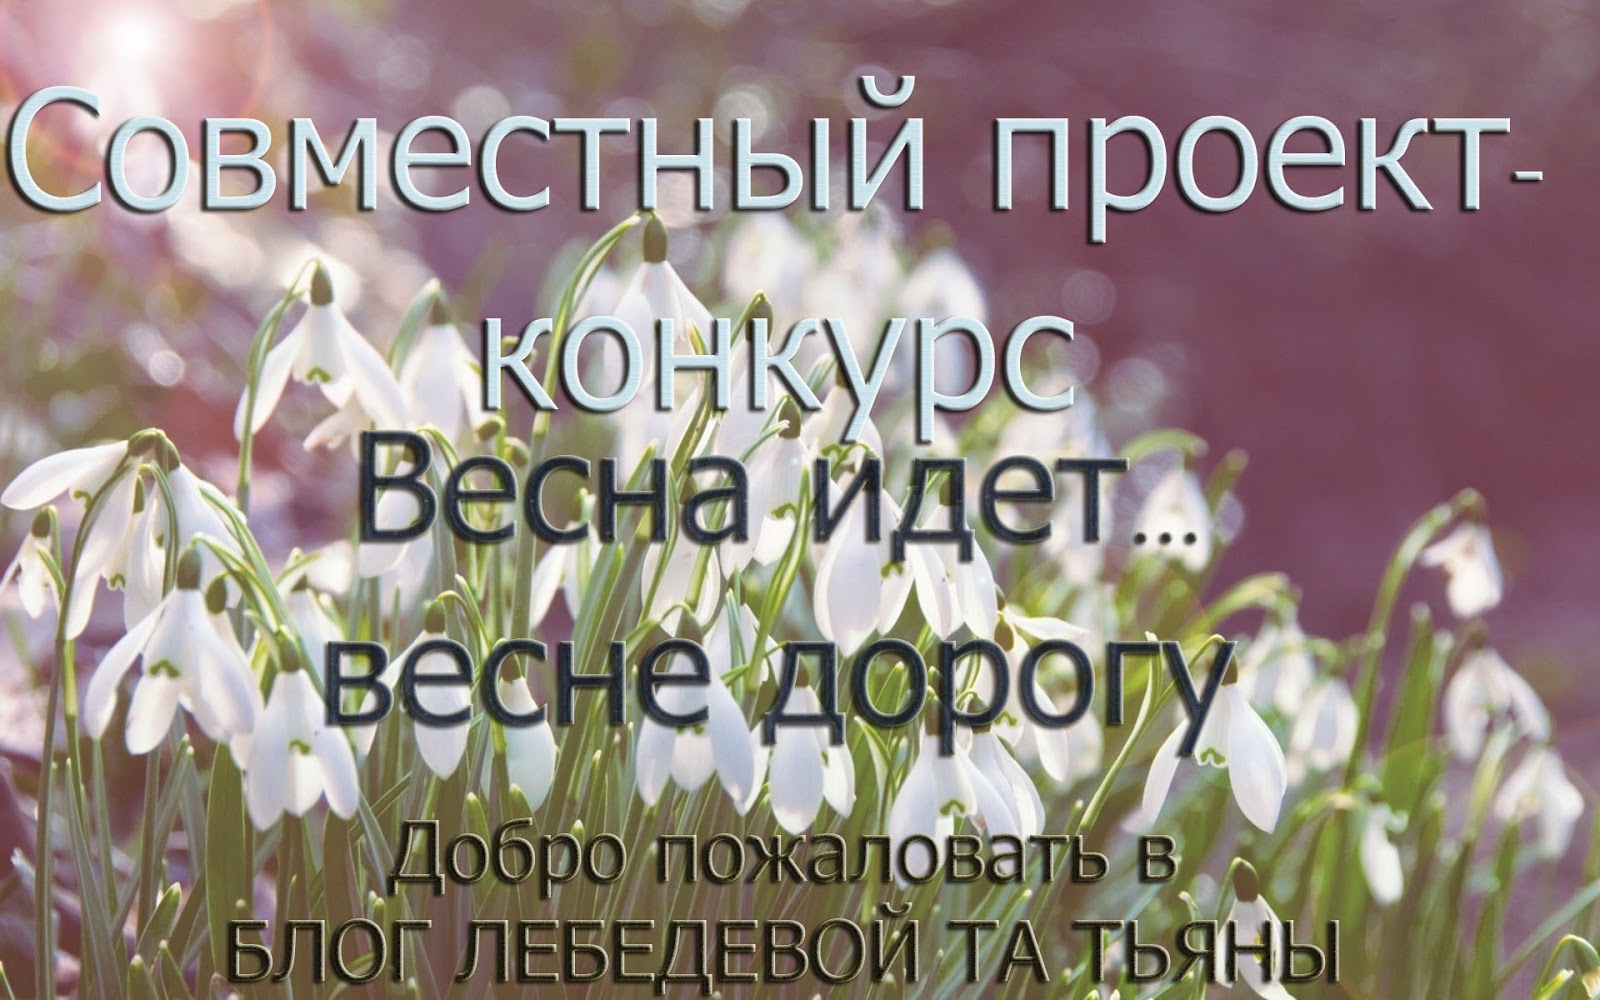 http://i-missisleta.blogspot.ru/2015/03/blog-post_5.html?showComment=1426016042410#c2324045064389022922